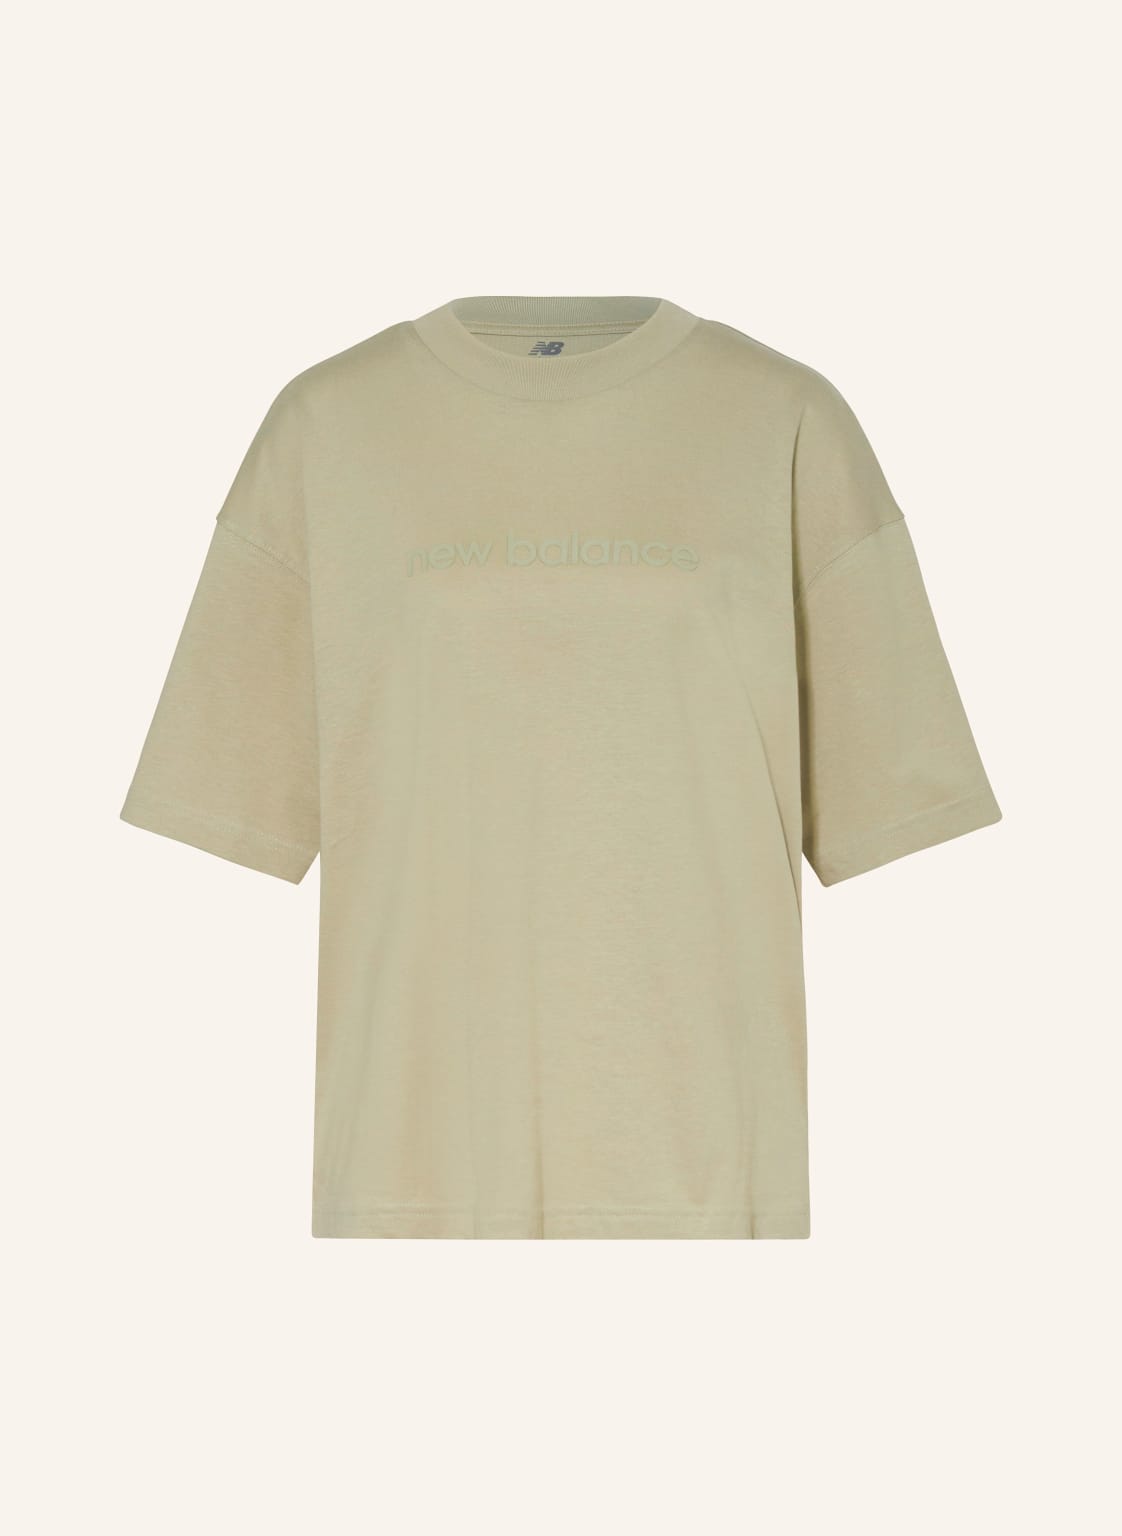 New Balance T-Shirt Hyper Density beige von New Balance